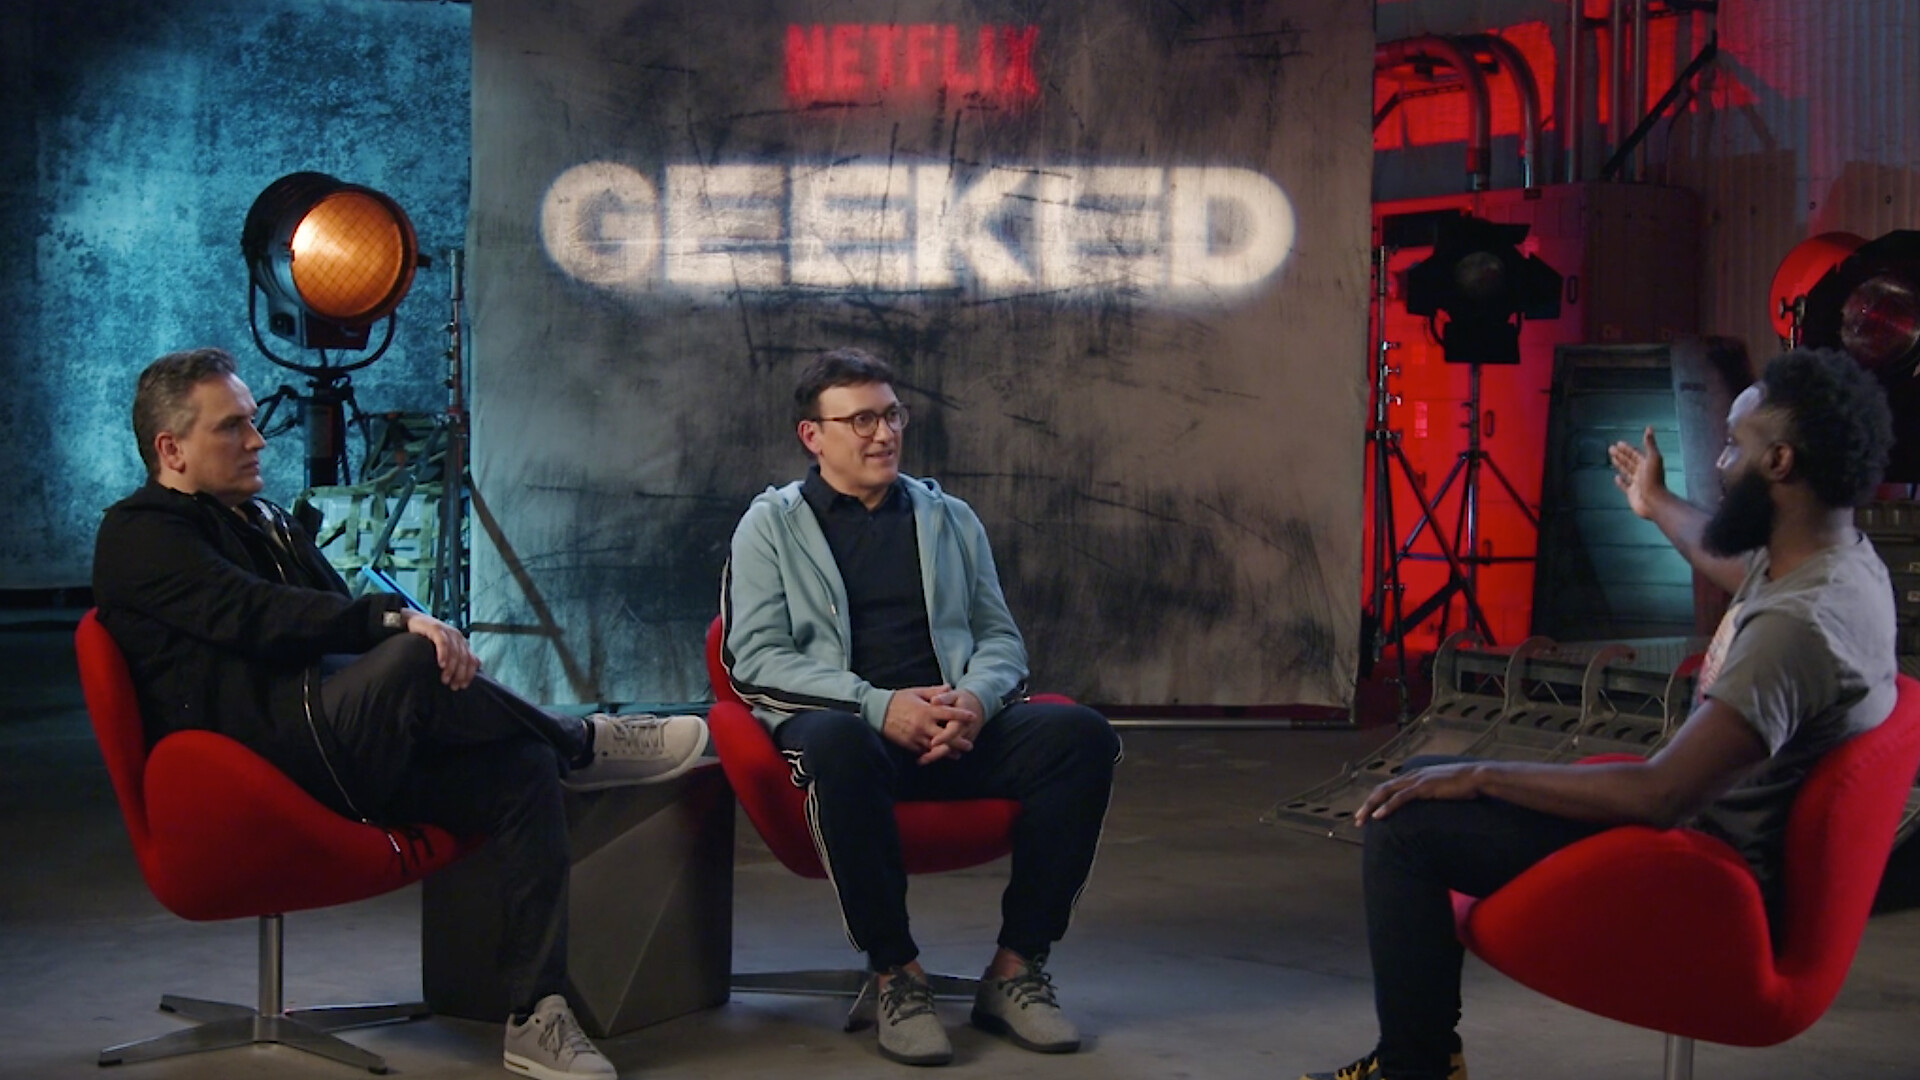 The New 'Cyberpunk: Edgerunners' Trailer - Netflix Tudum